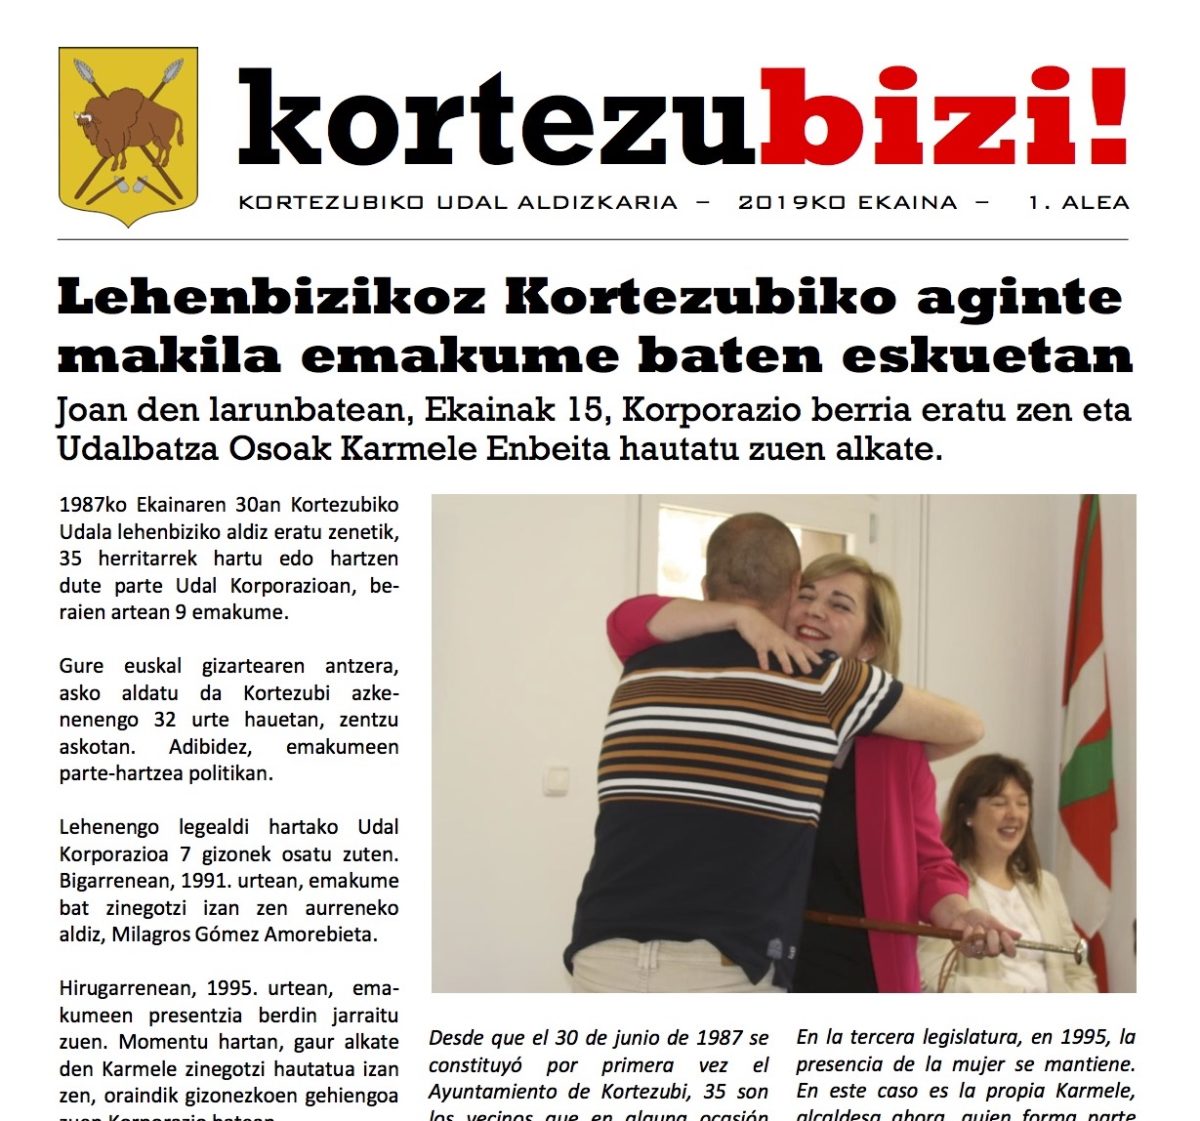 Kortezubizi! aldizkaria